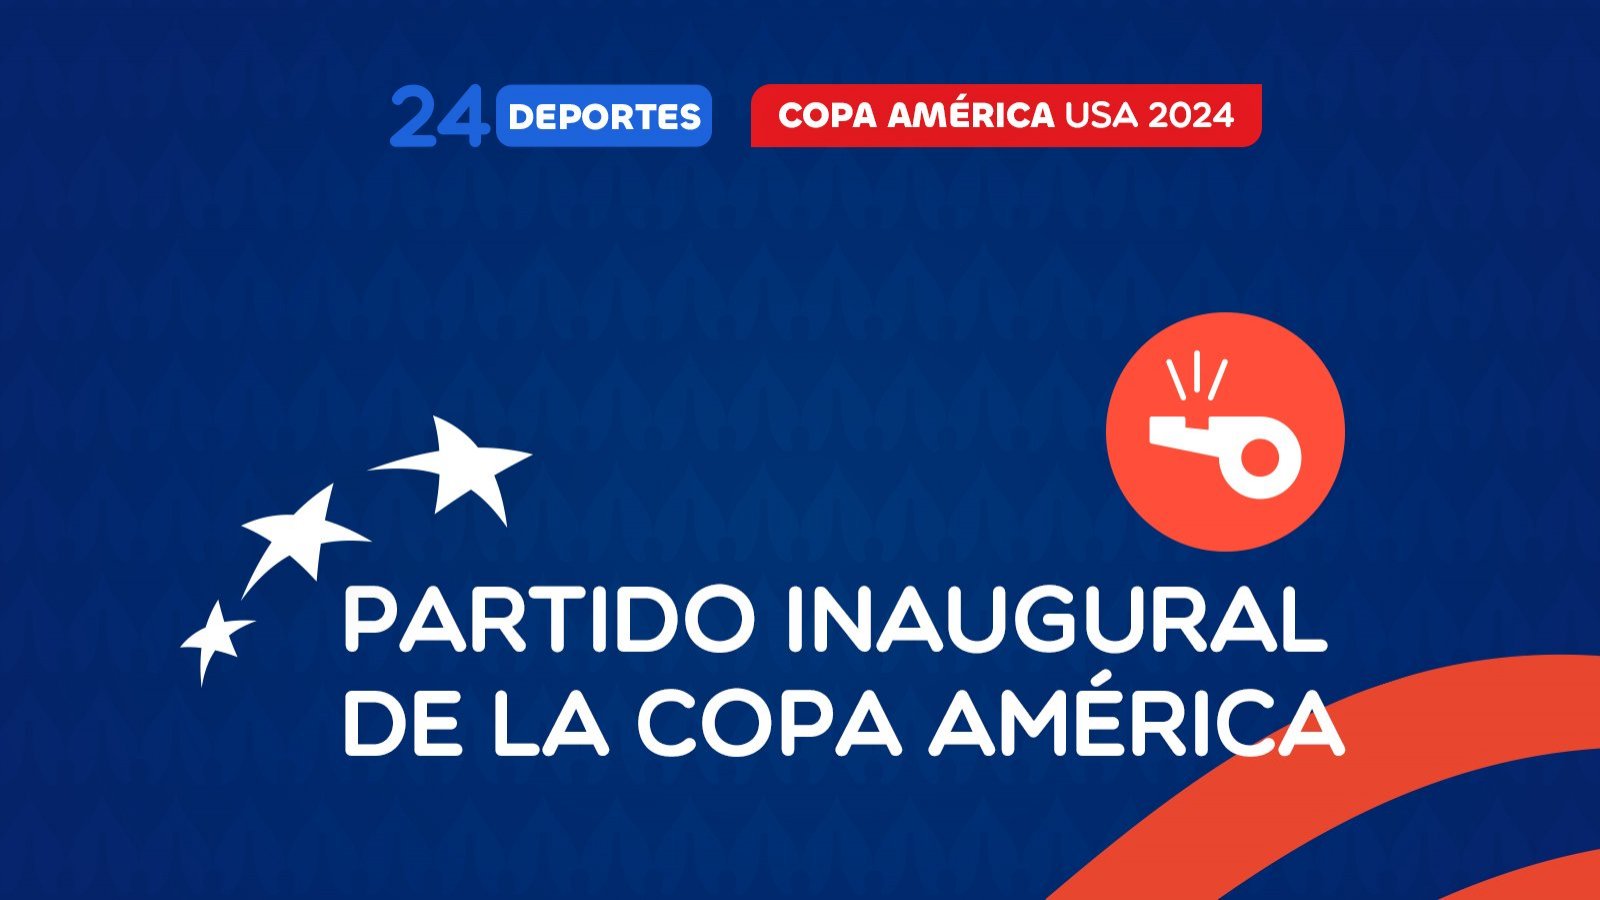 Fecha y día del partido inaugural de Copa América 2024